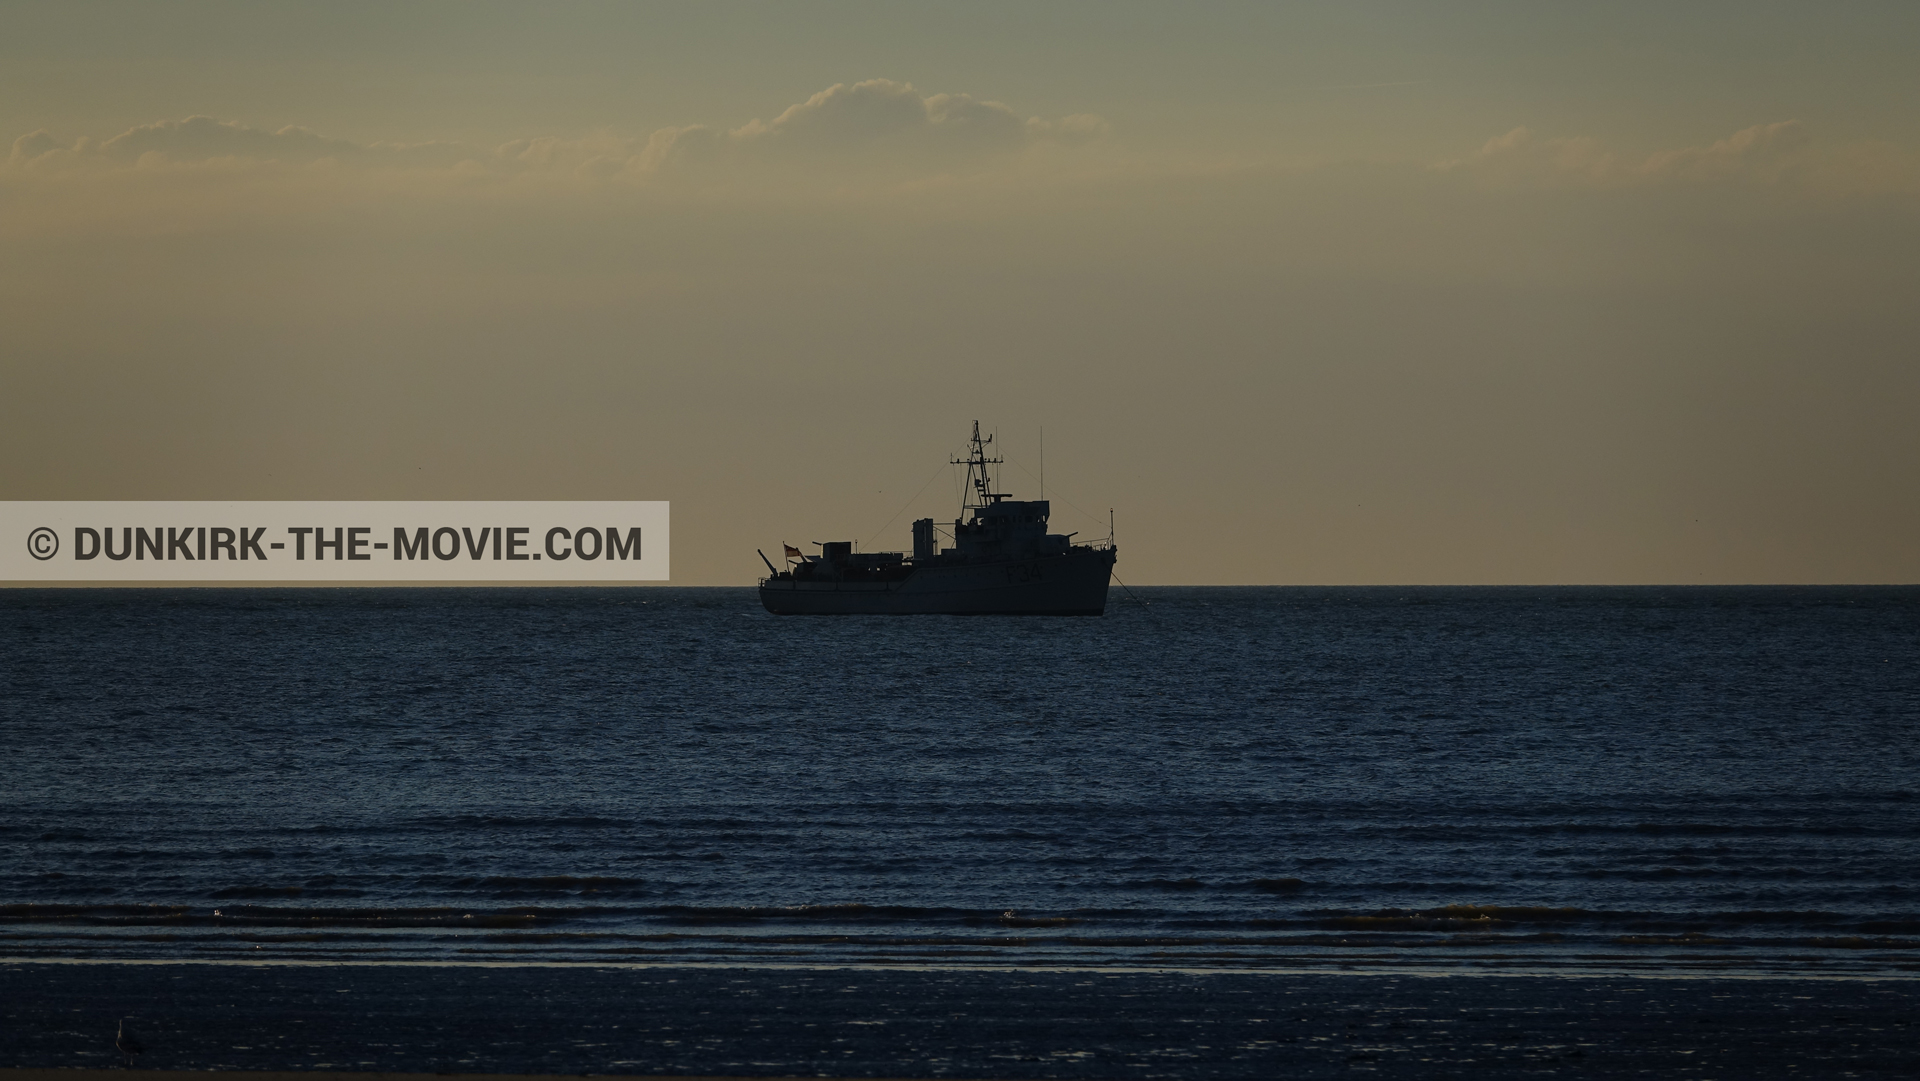 Fotos con barco, cielo anaranjado, mares calma,  durante el rodaje de la película Dunkerque de Nolan